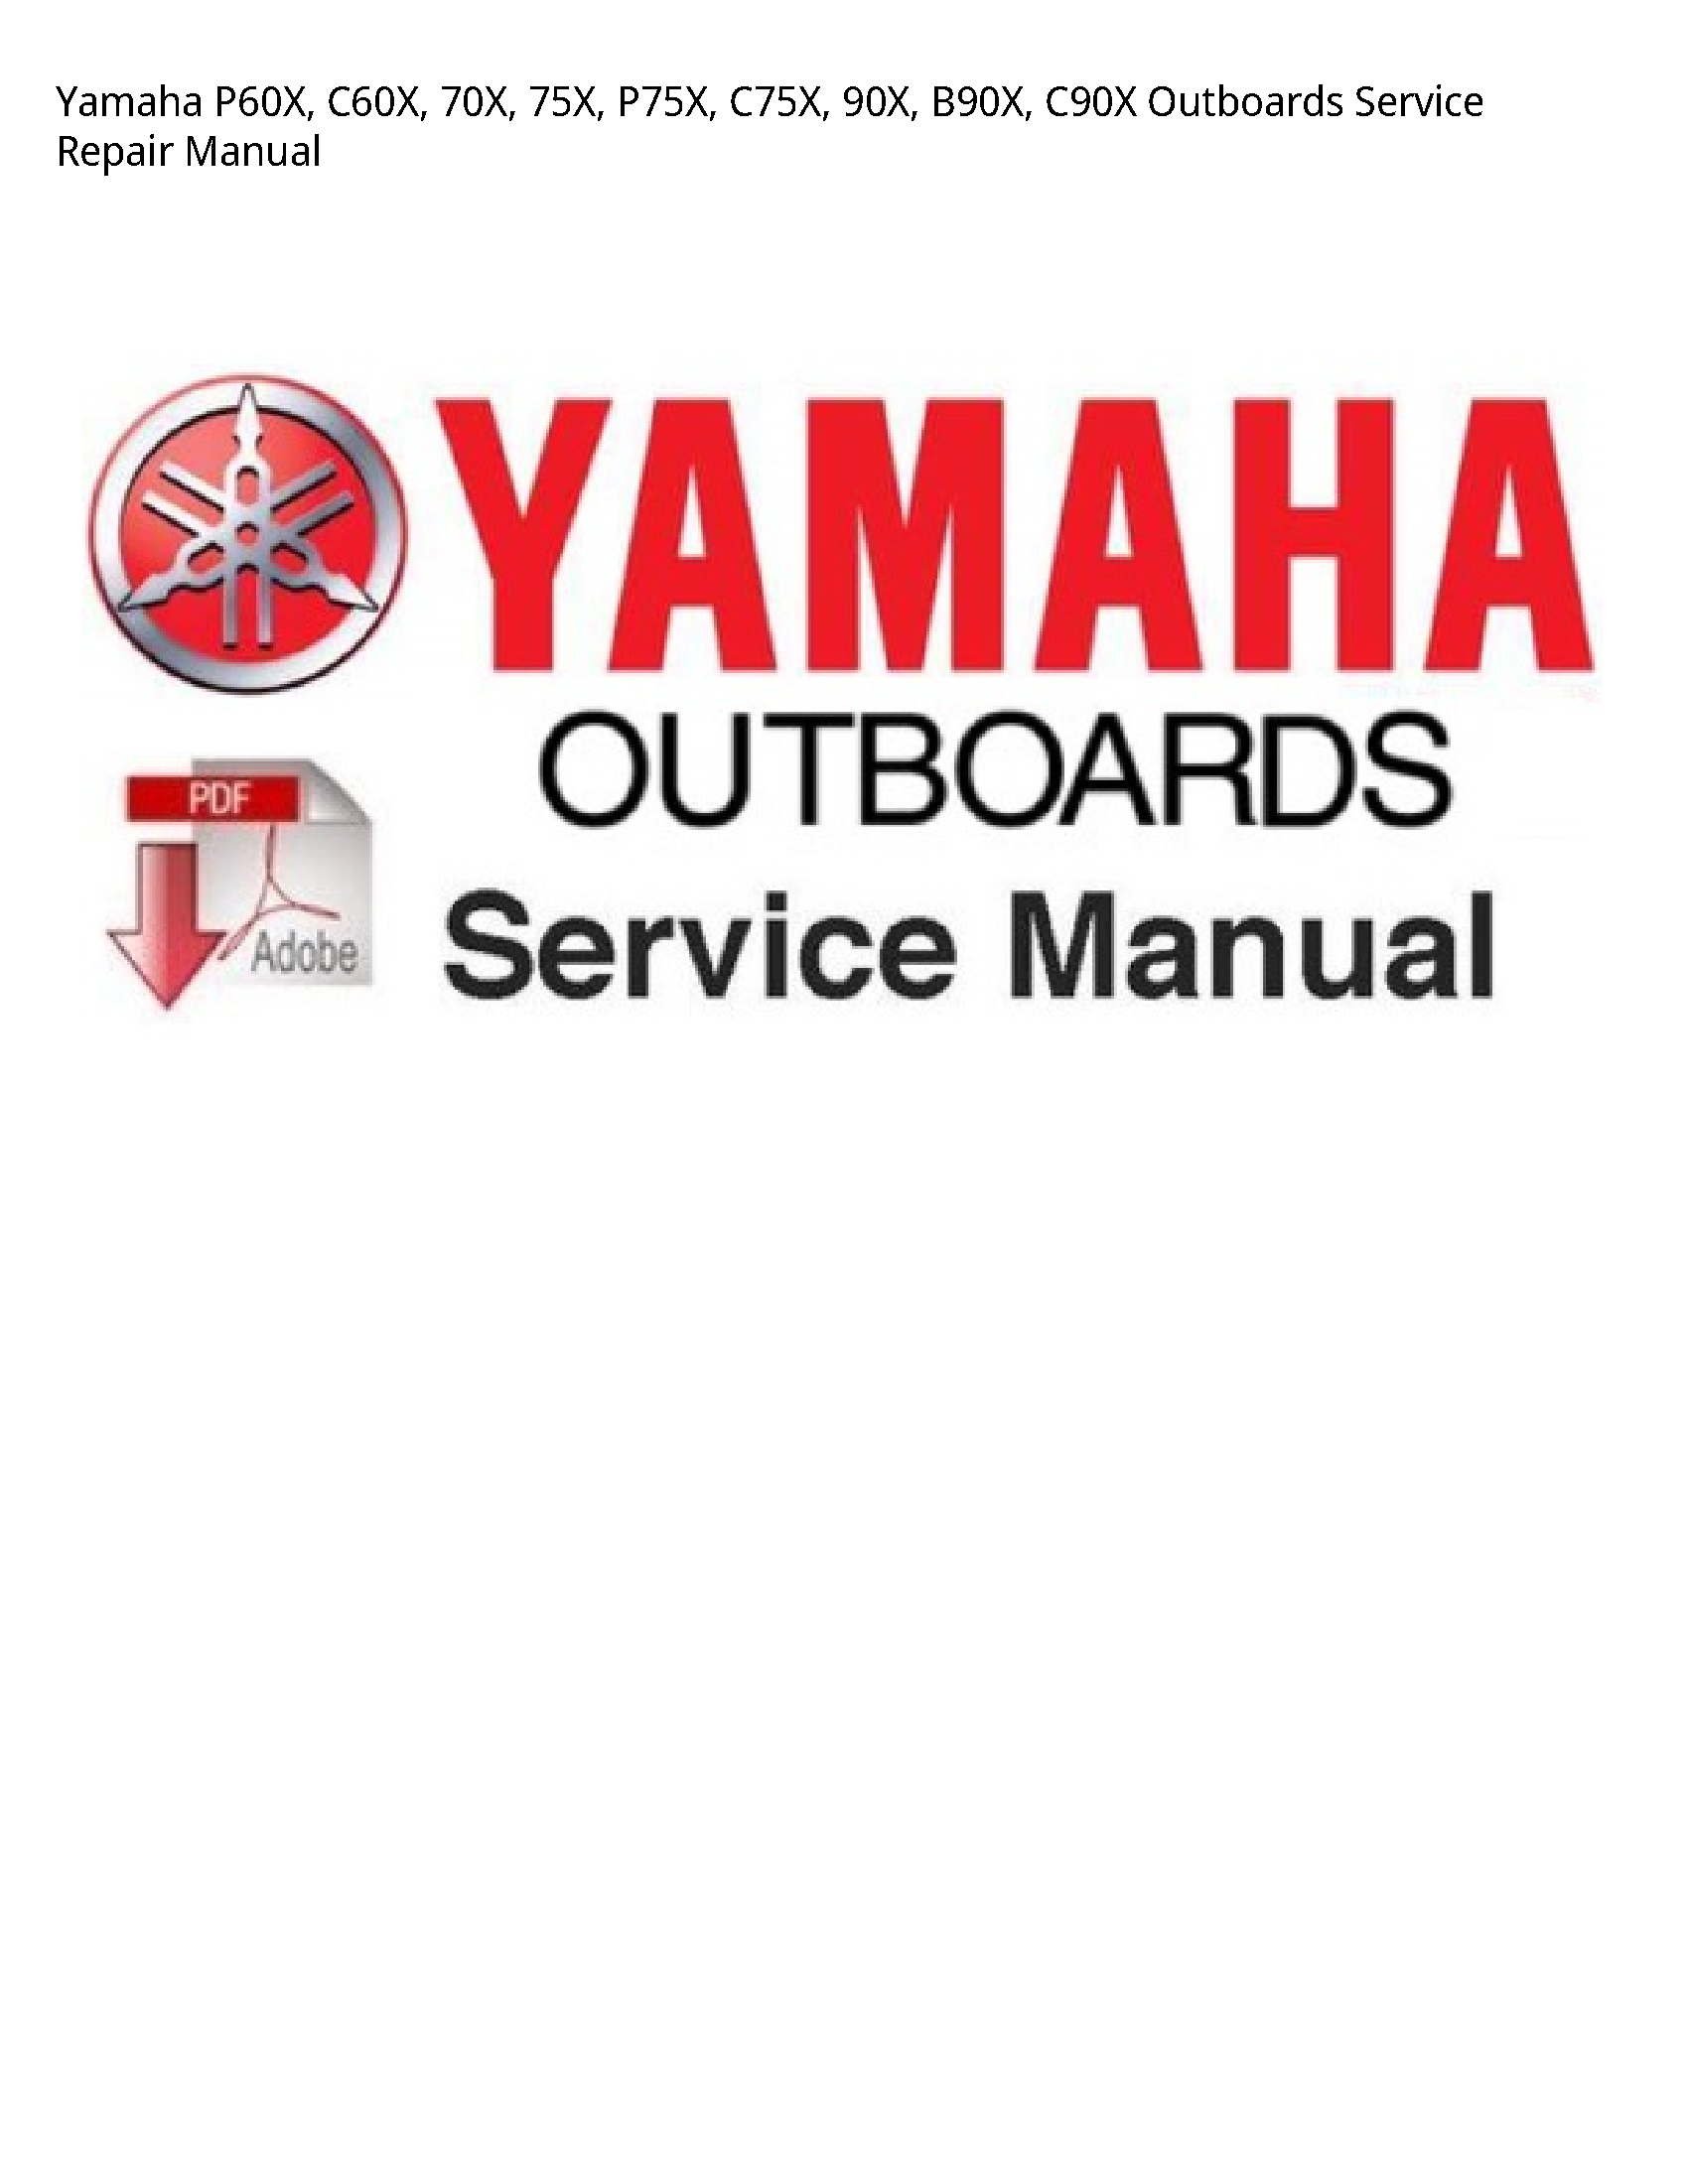 Yamaha P60X Outboards manual